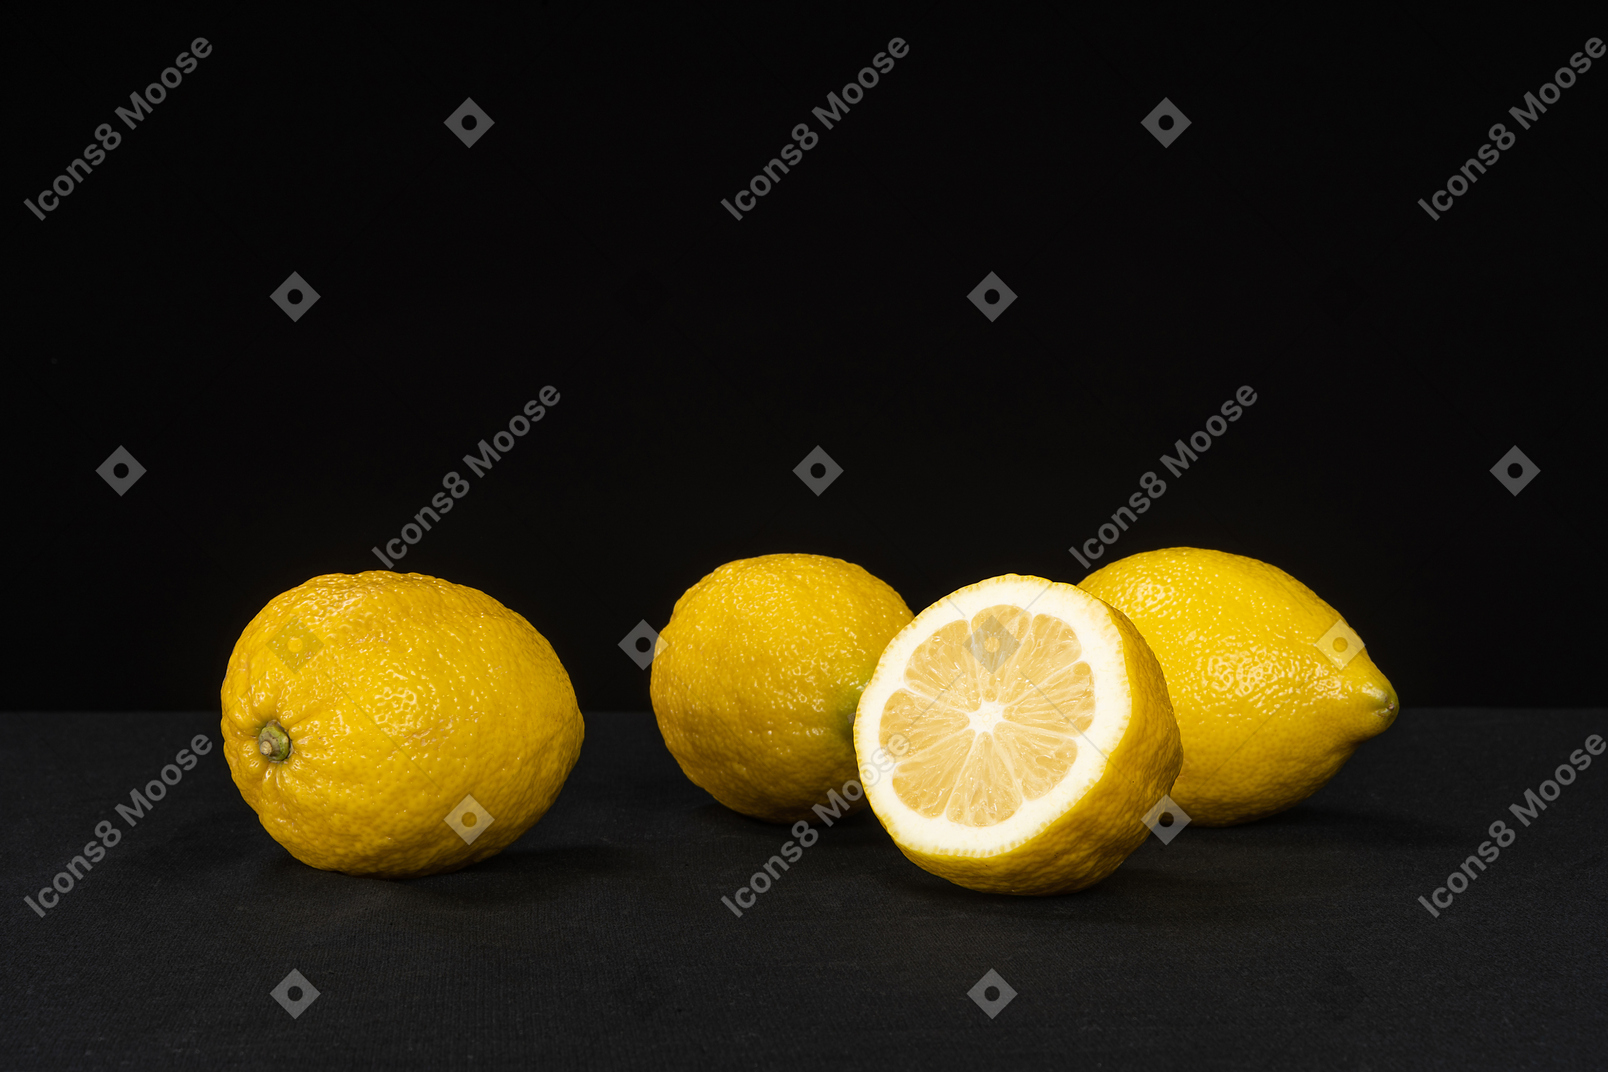 Four lemons lying in the black background